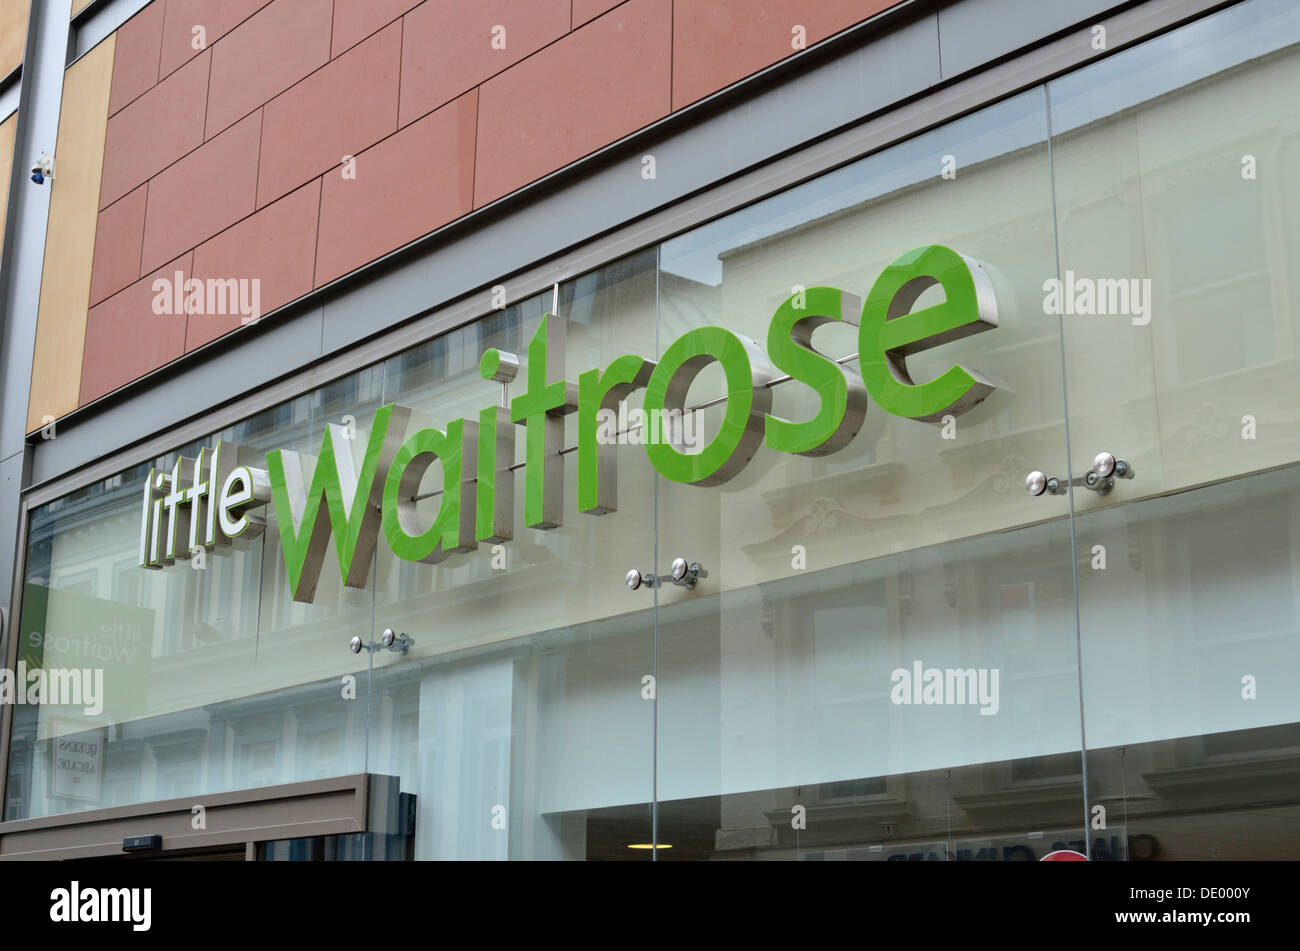 Little Waitrose in Leeds city centre, UK Stock Photo